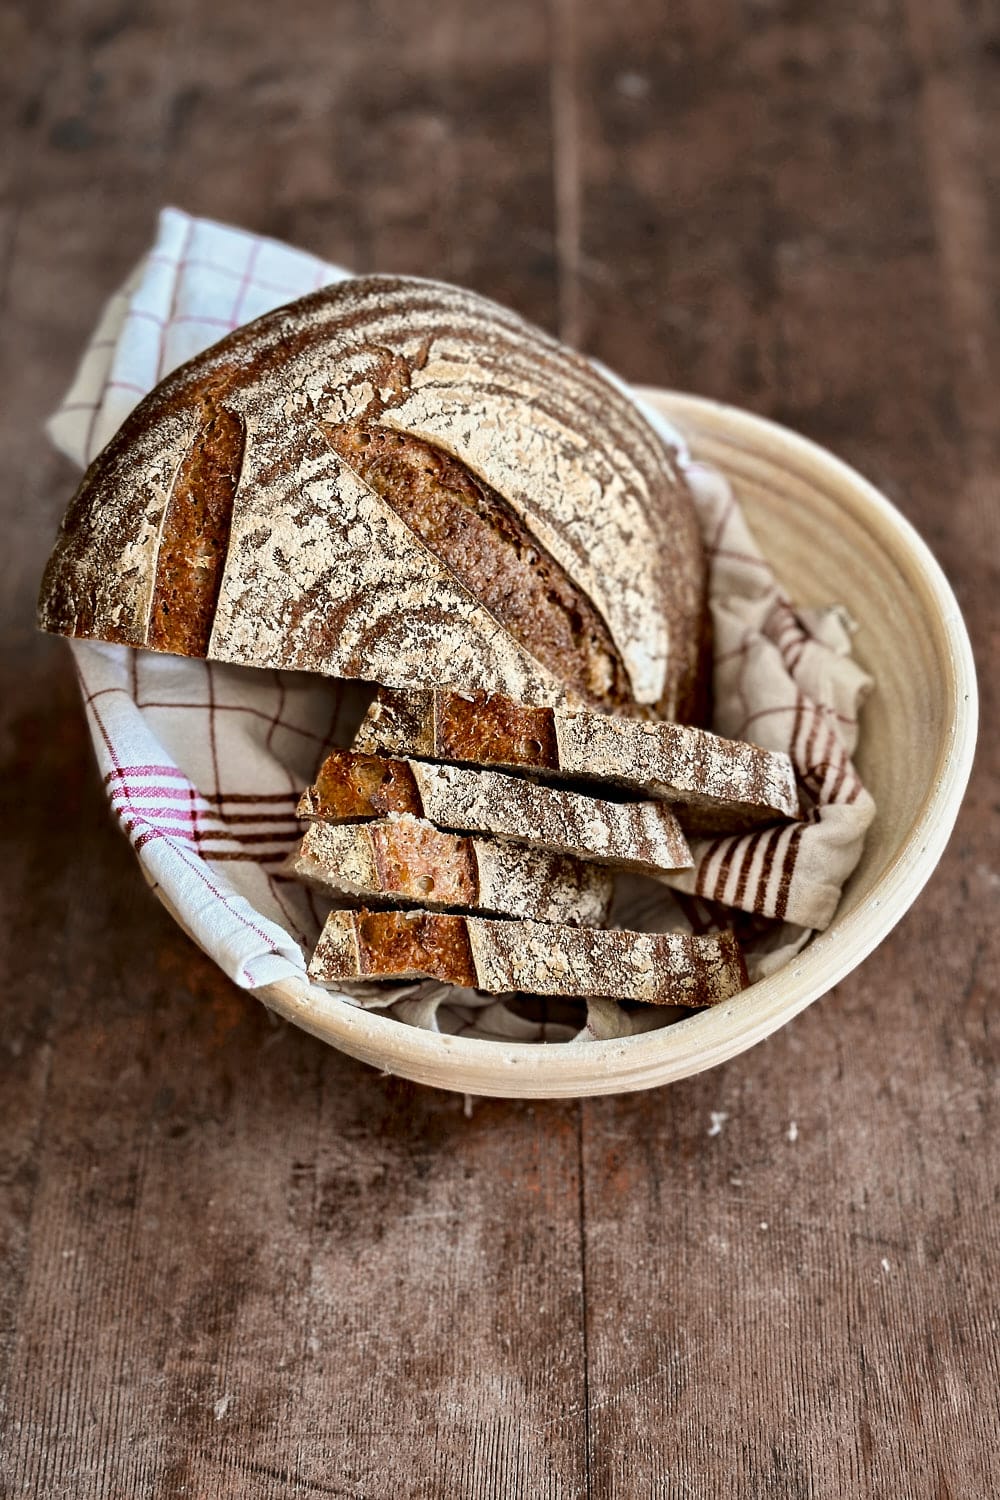 Rustic rye sourdough bread in a bread basket on a wooden table.